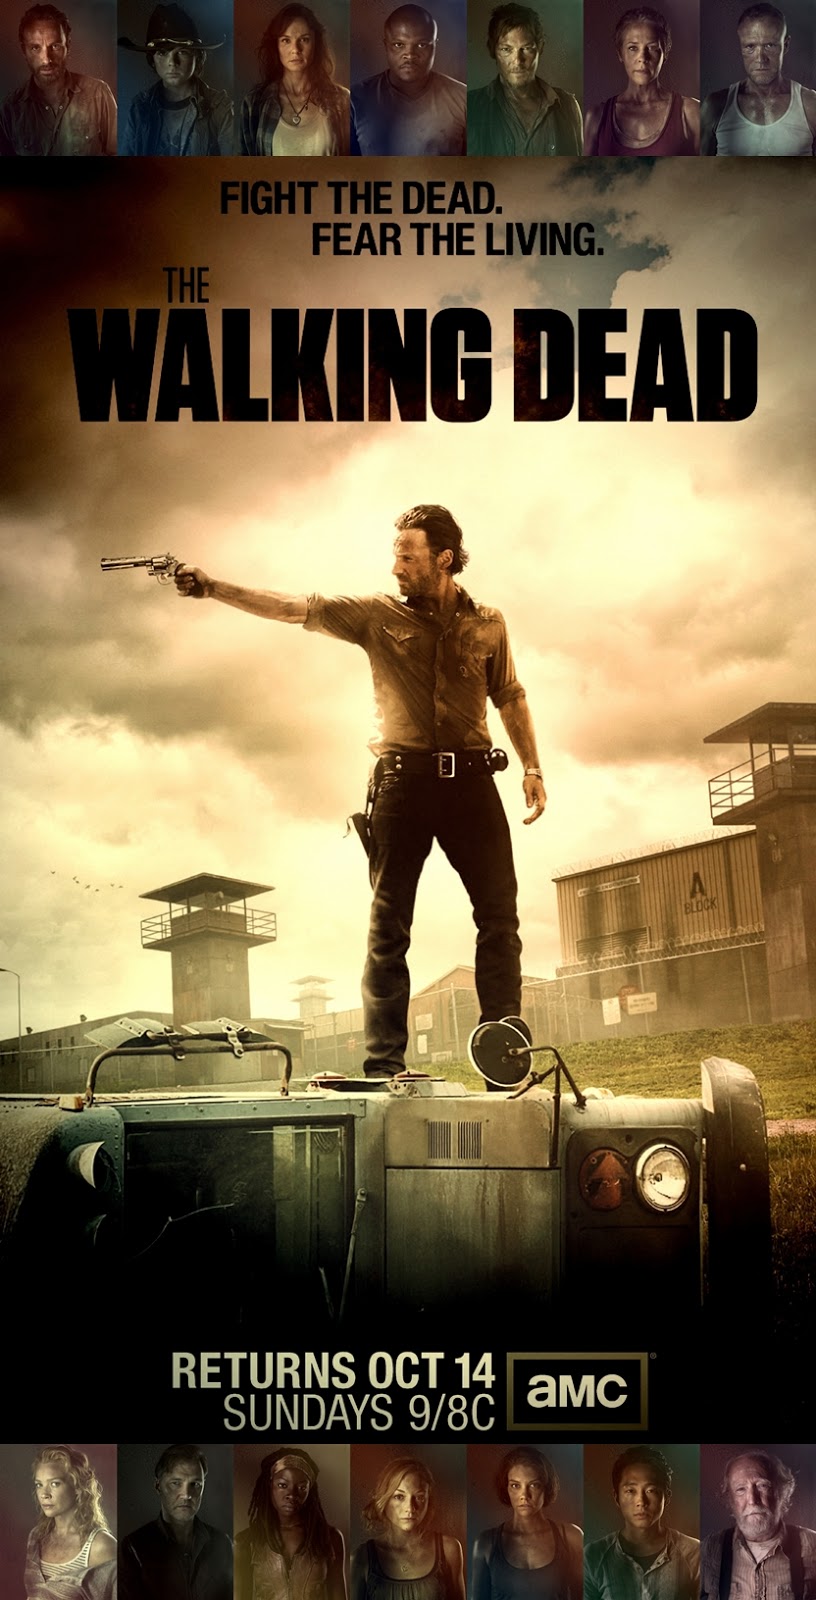 The Walking Dead S03e06